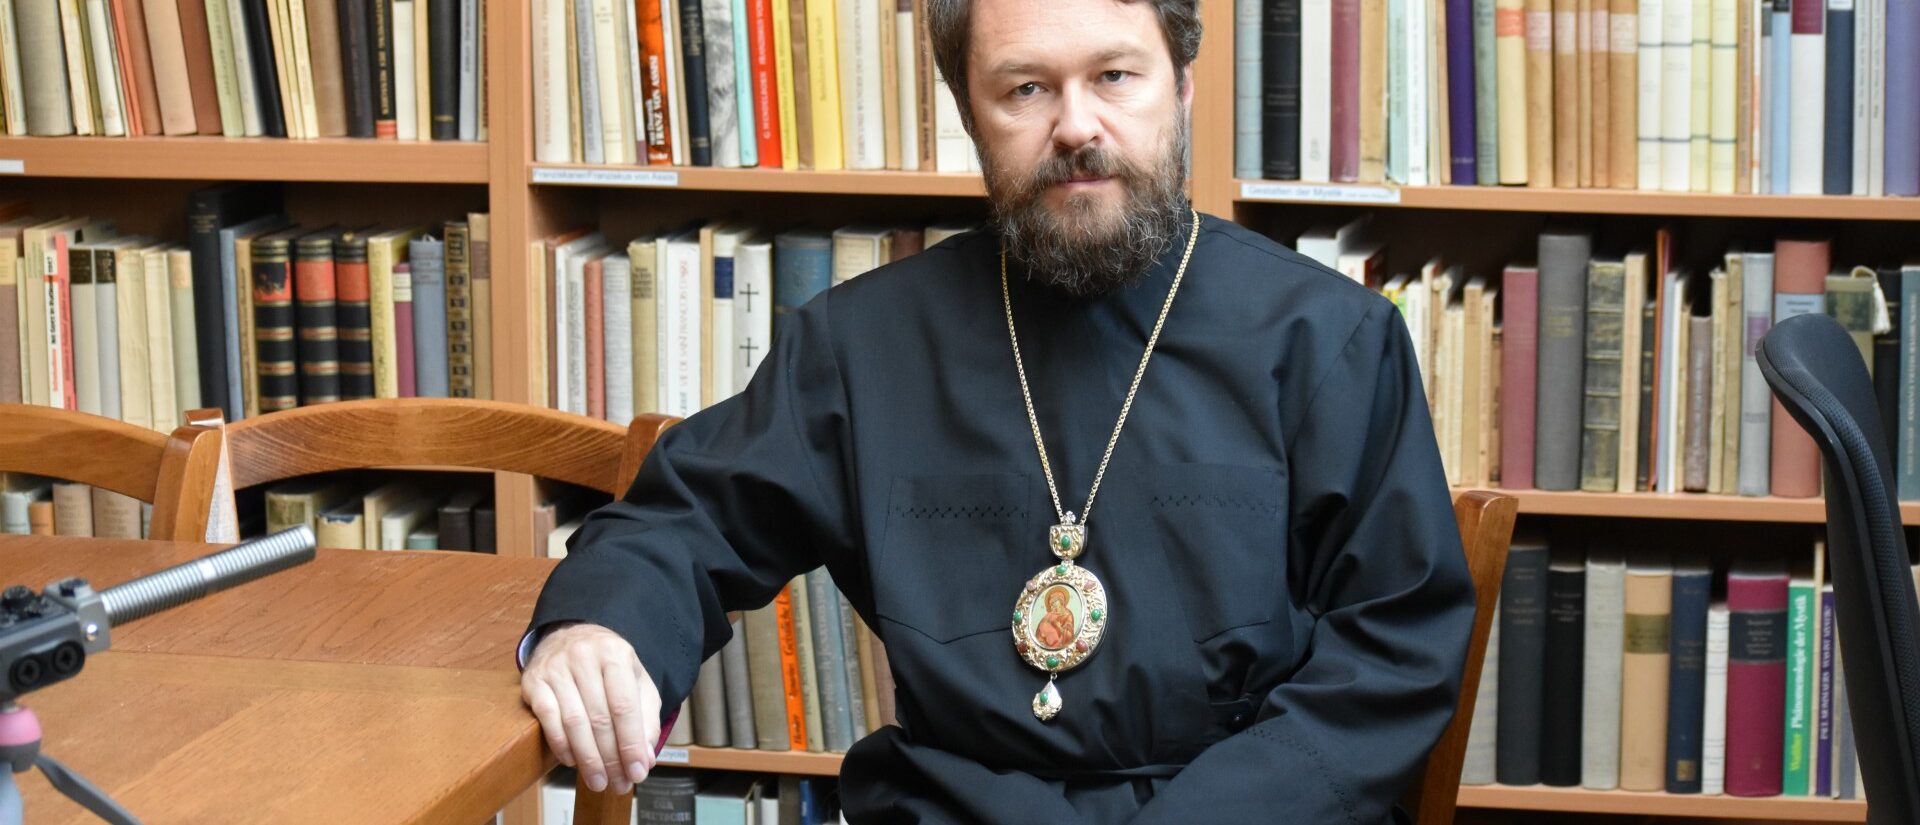 Le métropolite Hilarion était jusqu'à présent responsable du département pour les relations extérieures du Patriarcat de Moscou | © Jacques Berset